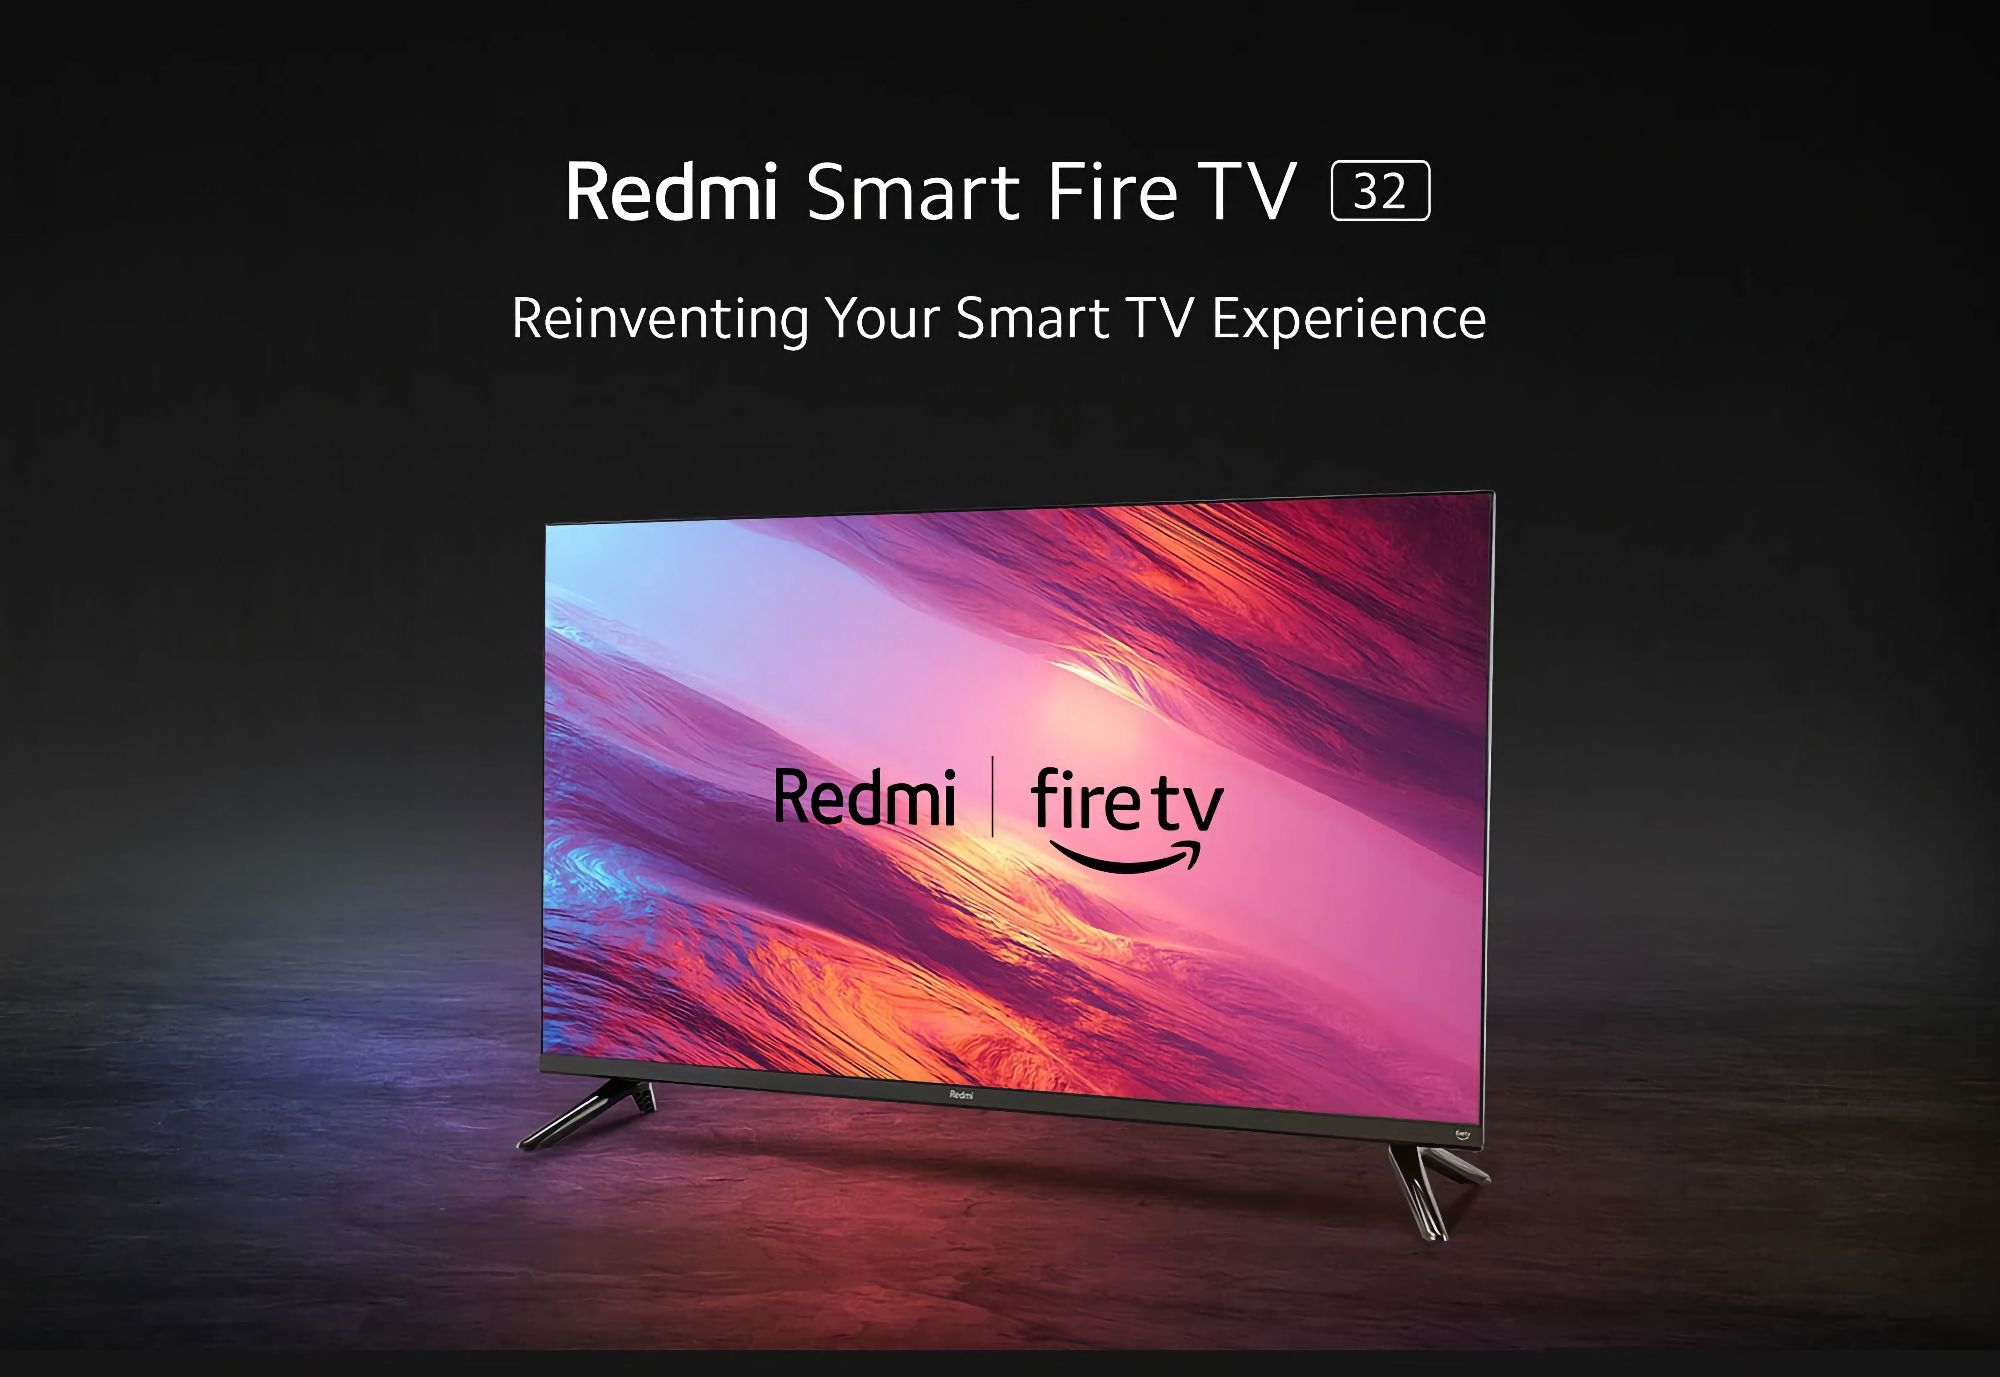 Redmi Smart Fire TV: 32-Zoll-Fernseher mit Amazon Fire OS 7 an Bord, 20-W-Lautsprechern, AirPlay- und Alexa-Unterstützung für 158 Dollar